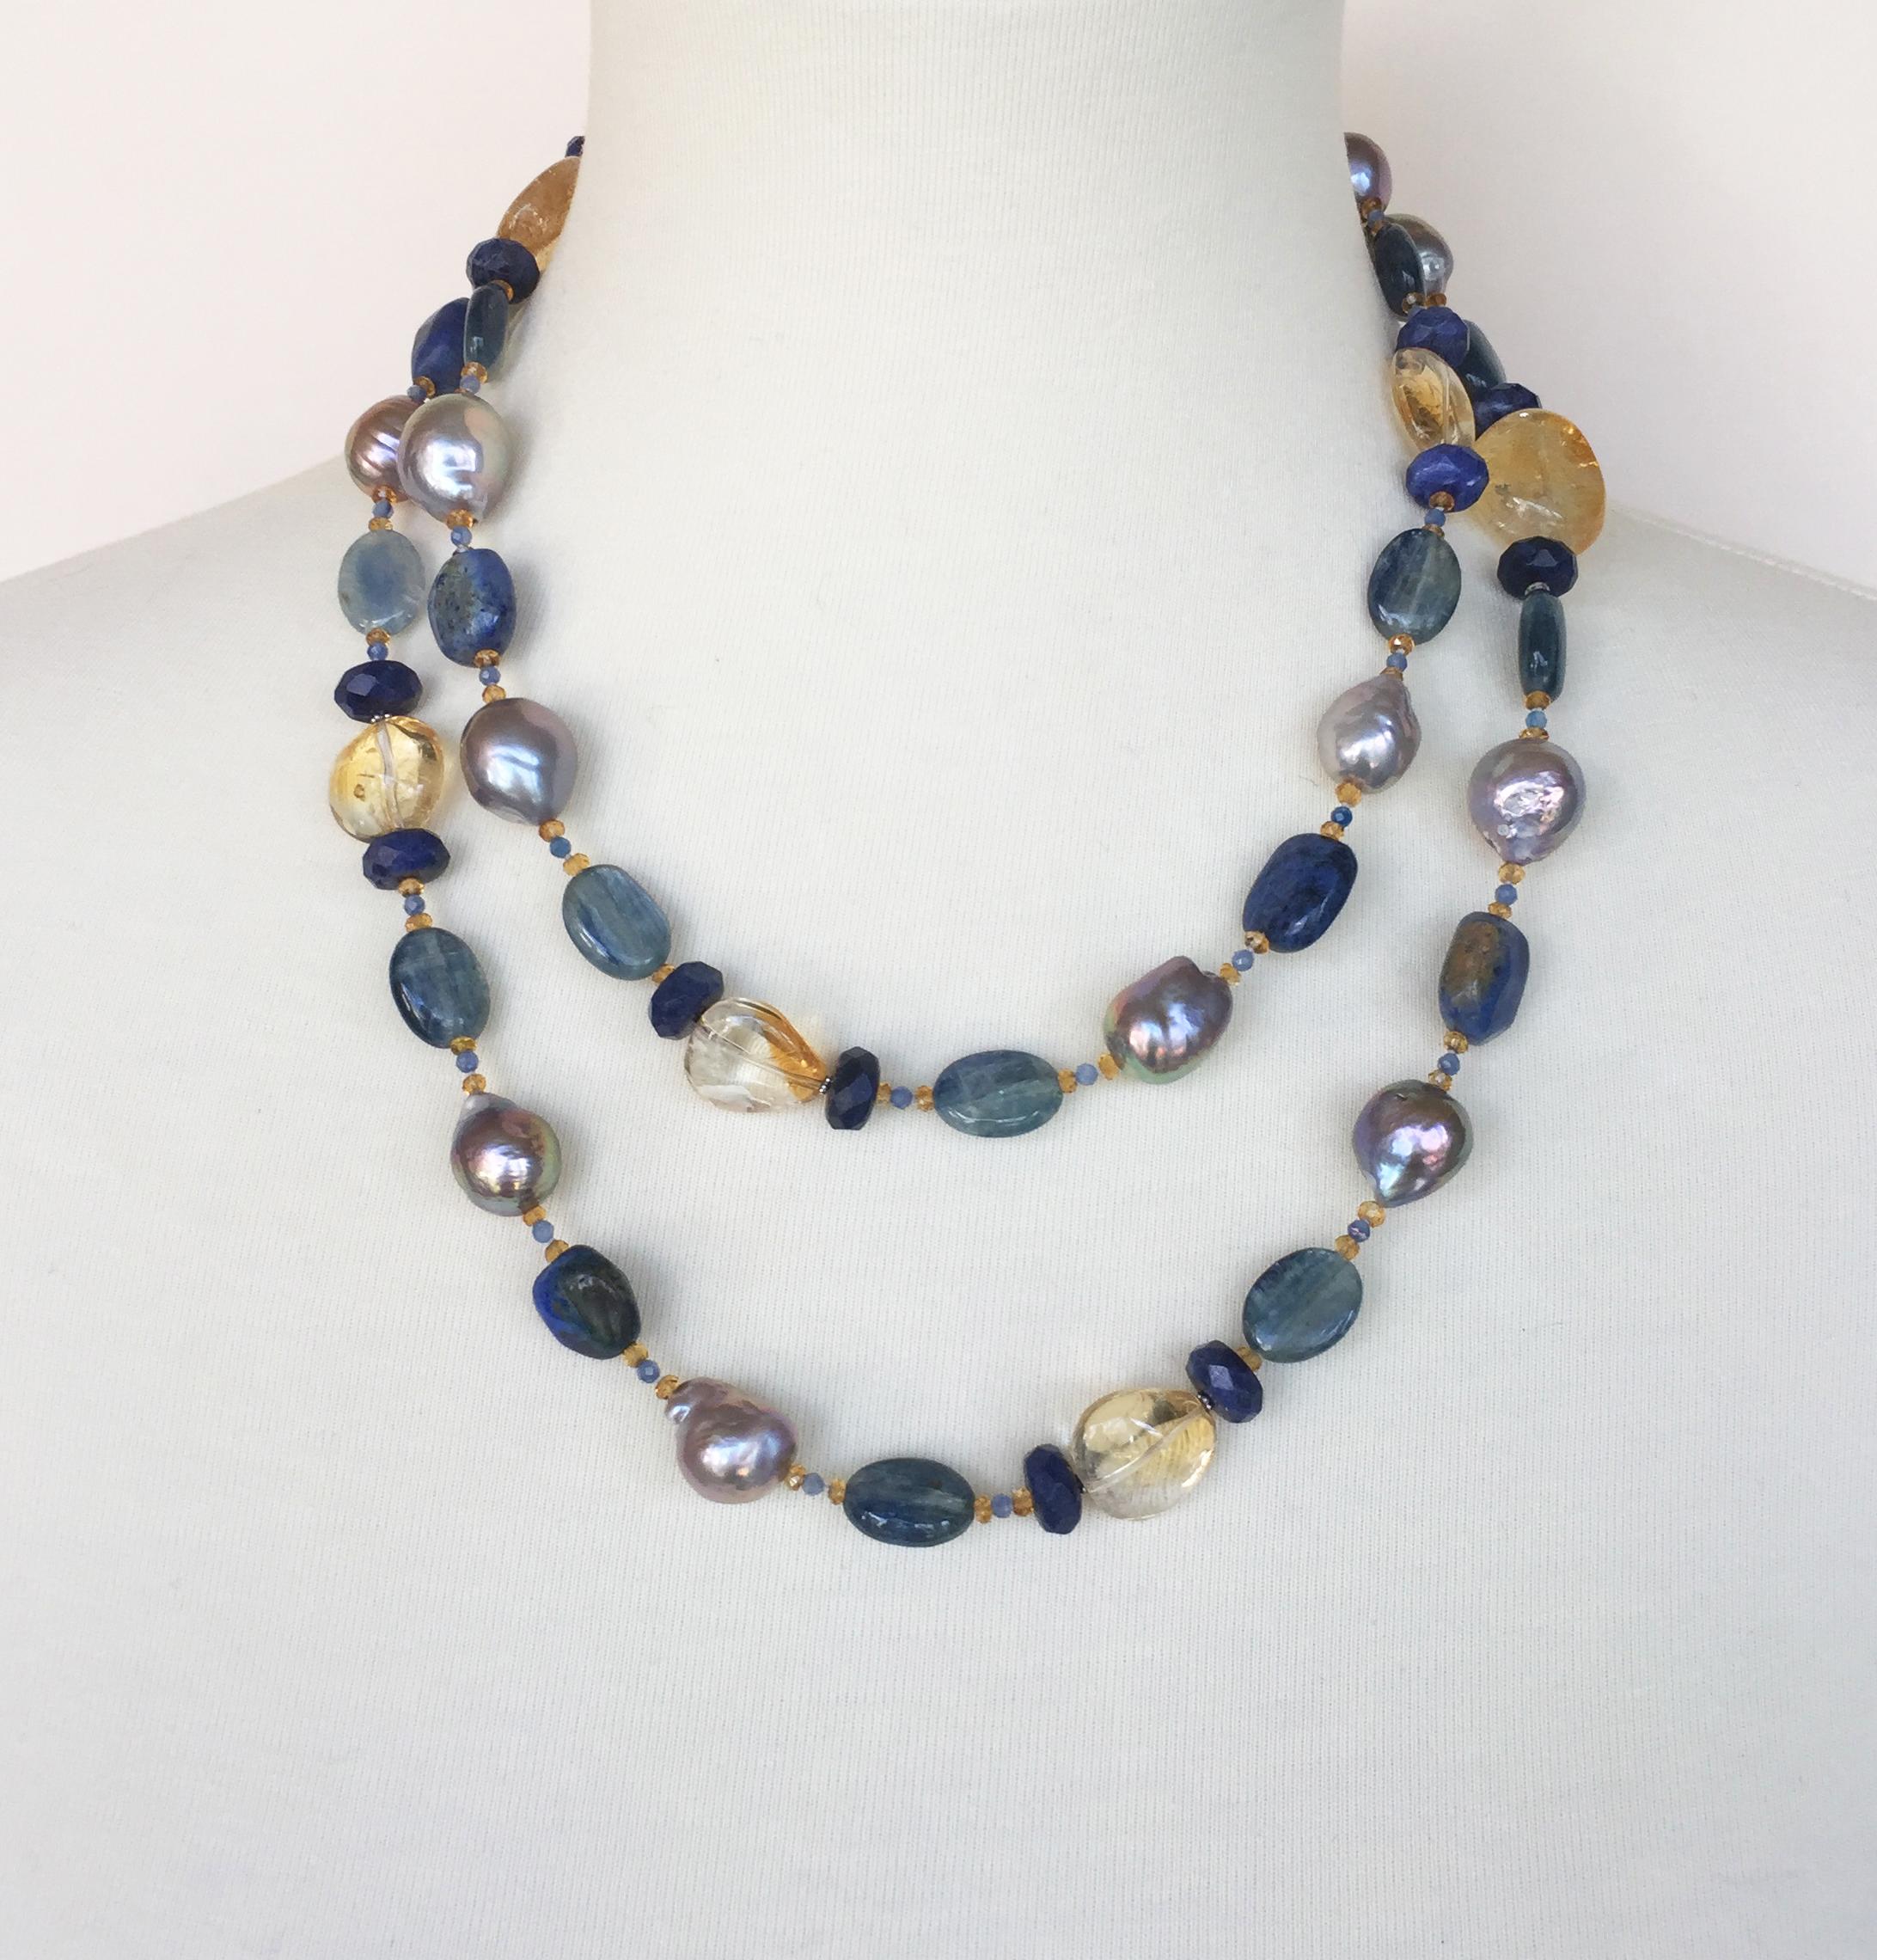 Marina J. Grey Pearl and Semiprecious Stones Sautoir Necklace with 14 Karat Gold 2